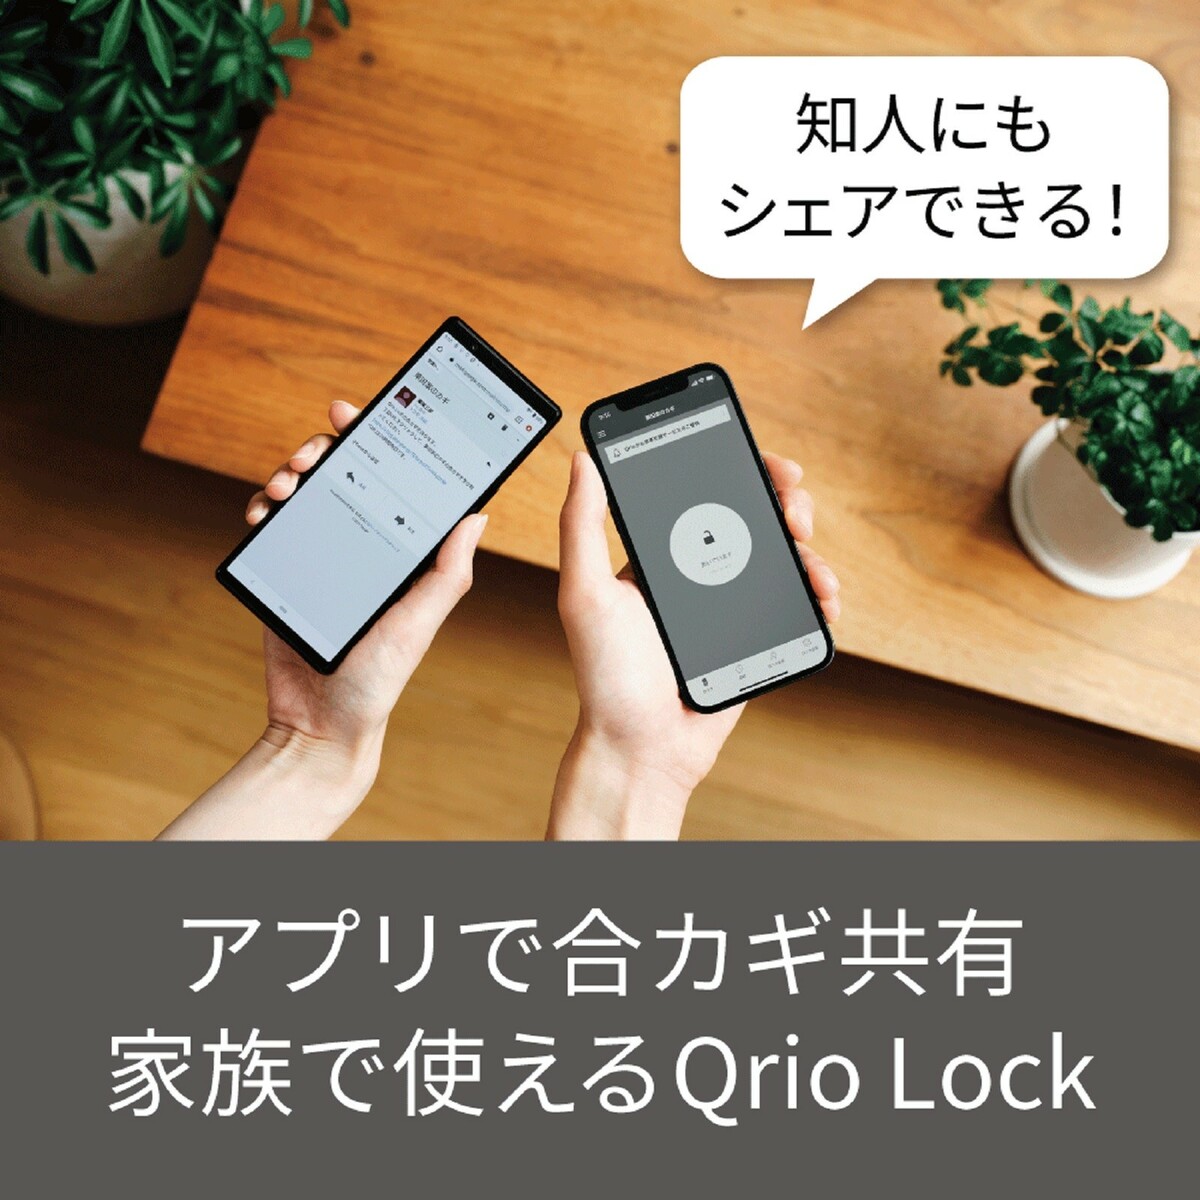 【ポイント10倍】【Qrio 公式】 3点セット Qrio Lock + Qrio Key + Qrio Hub キュリオロック キュリオキー  キュリオハブ スマートロック オートロック スマートホーム リモコンキー リモート アレクサ対応 鍵 玄関 ドア 後付け 送料無料 Q-SL2  Q-K1 